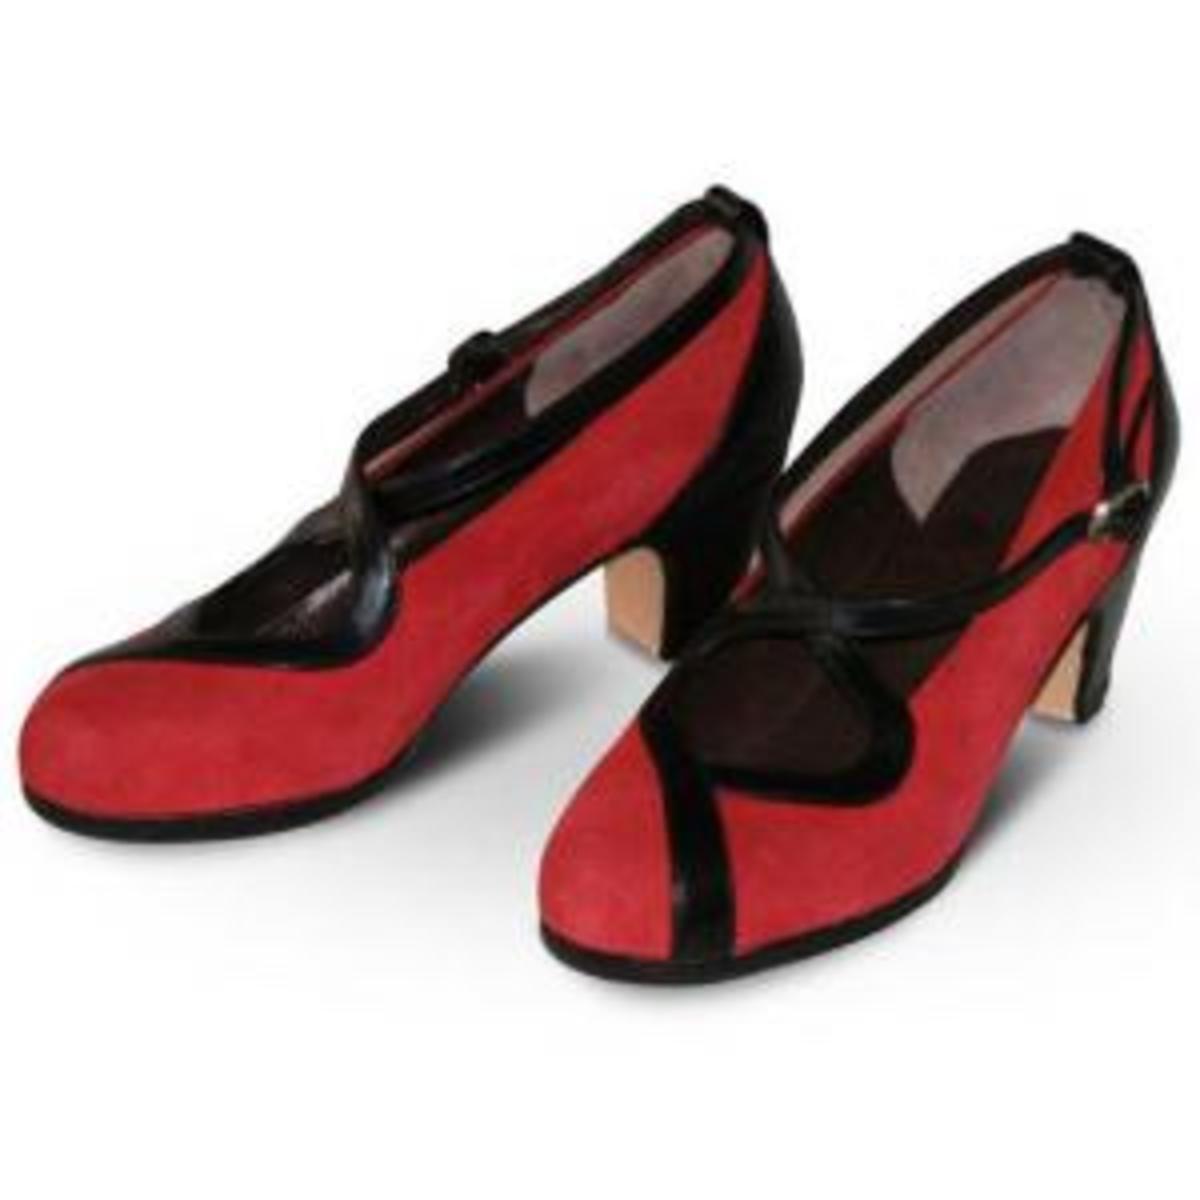 flamenco-shoes-advice